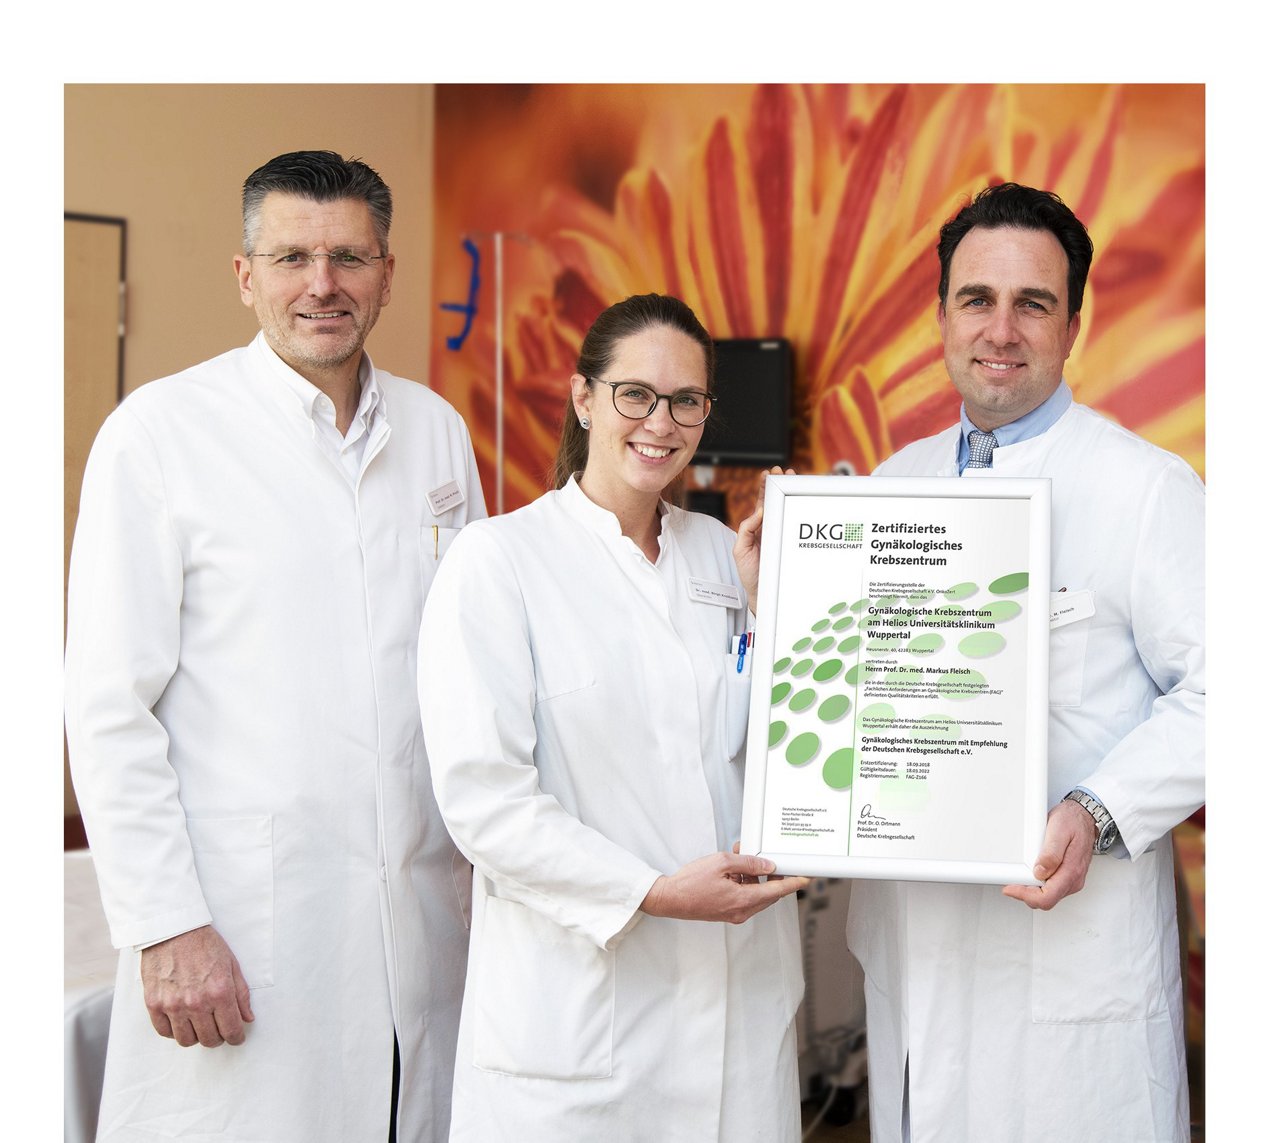 Zertifiziertes Gynäkologisches Krebszentrum - Landesfrauenklinik - Das Team des Gynäkologischen Krebszentrum